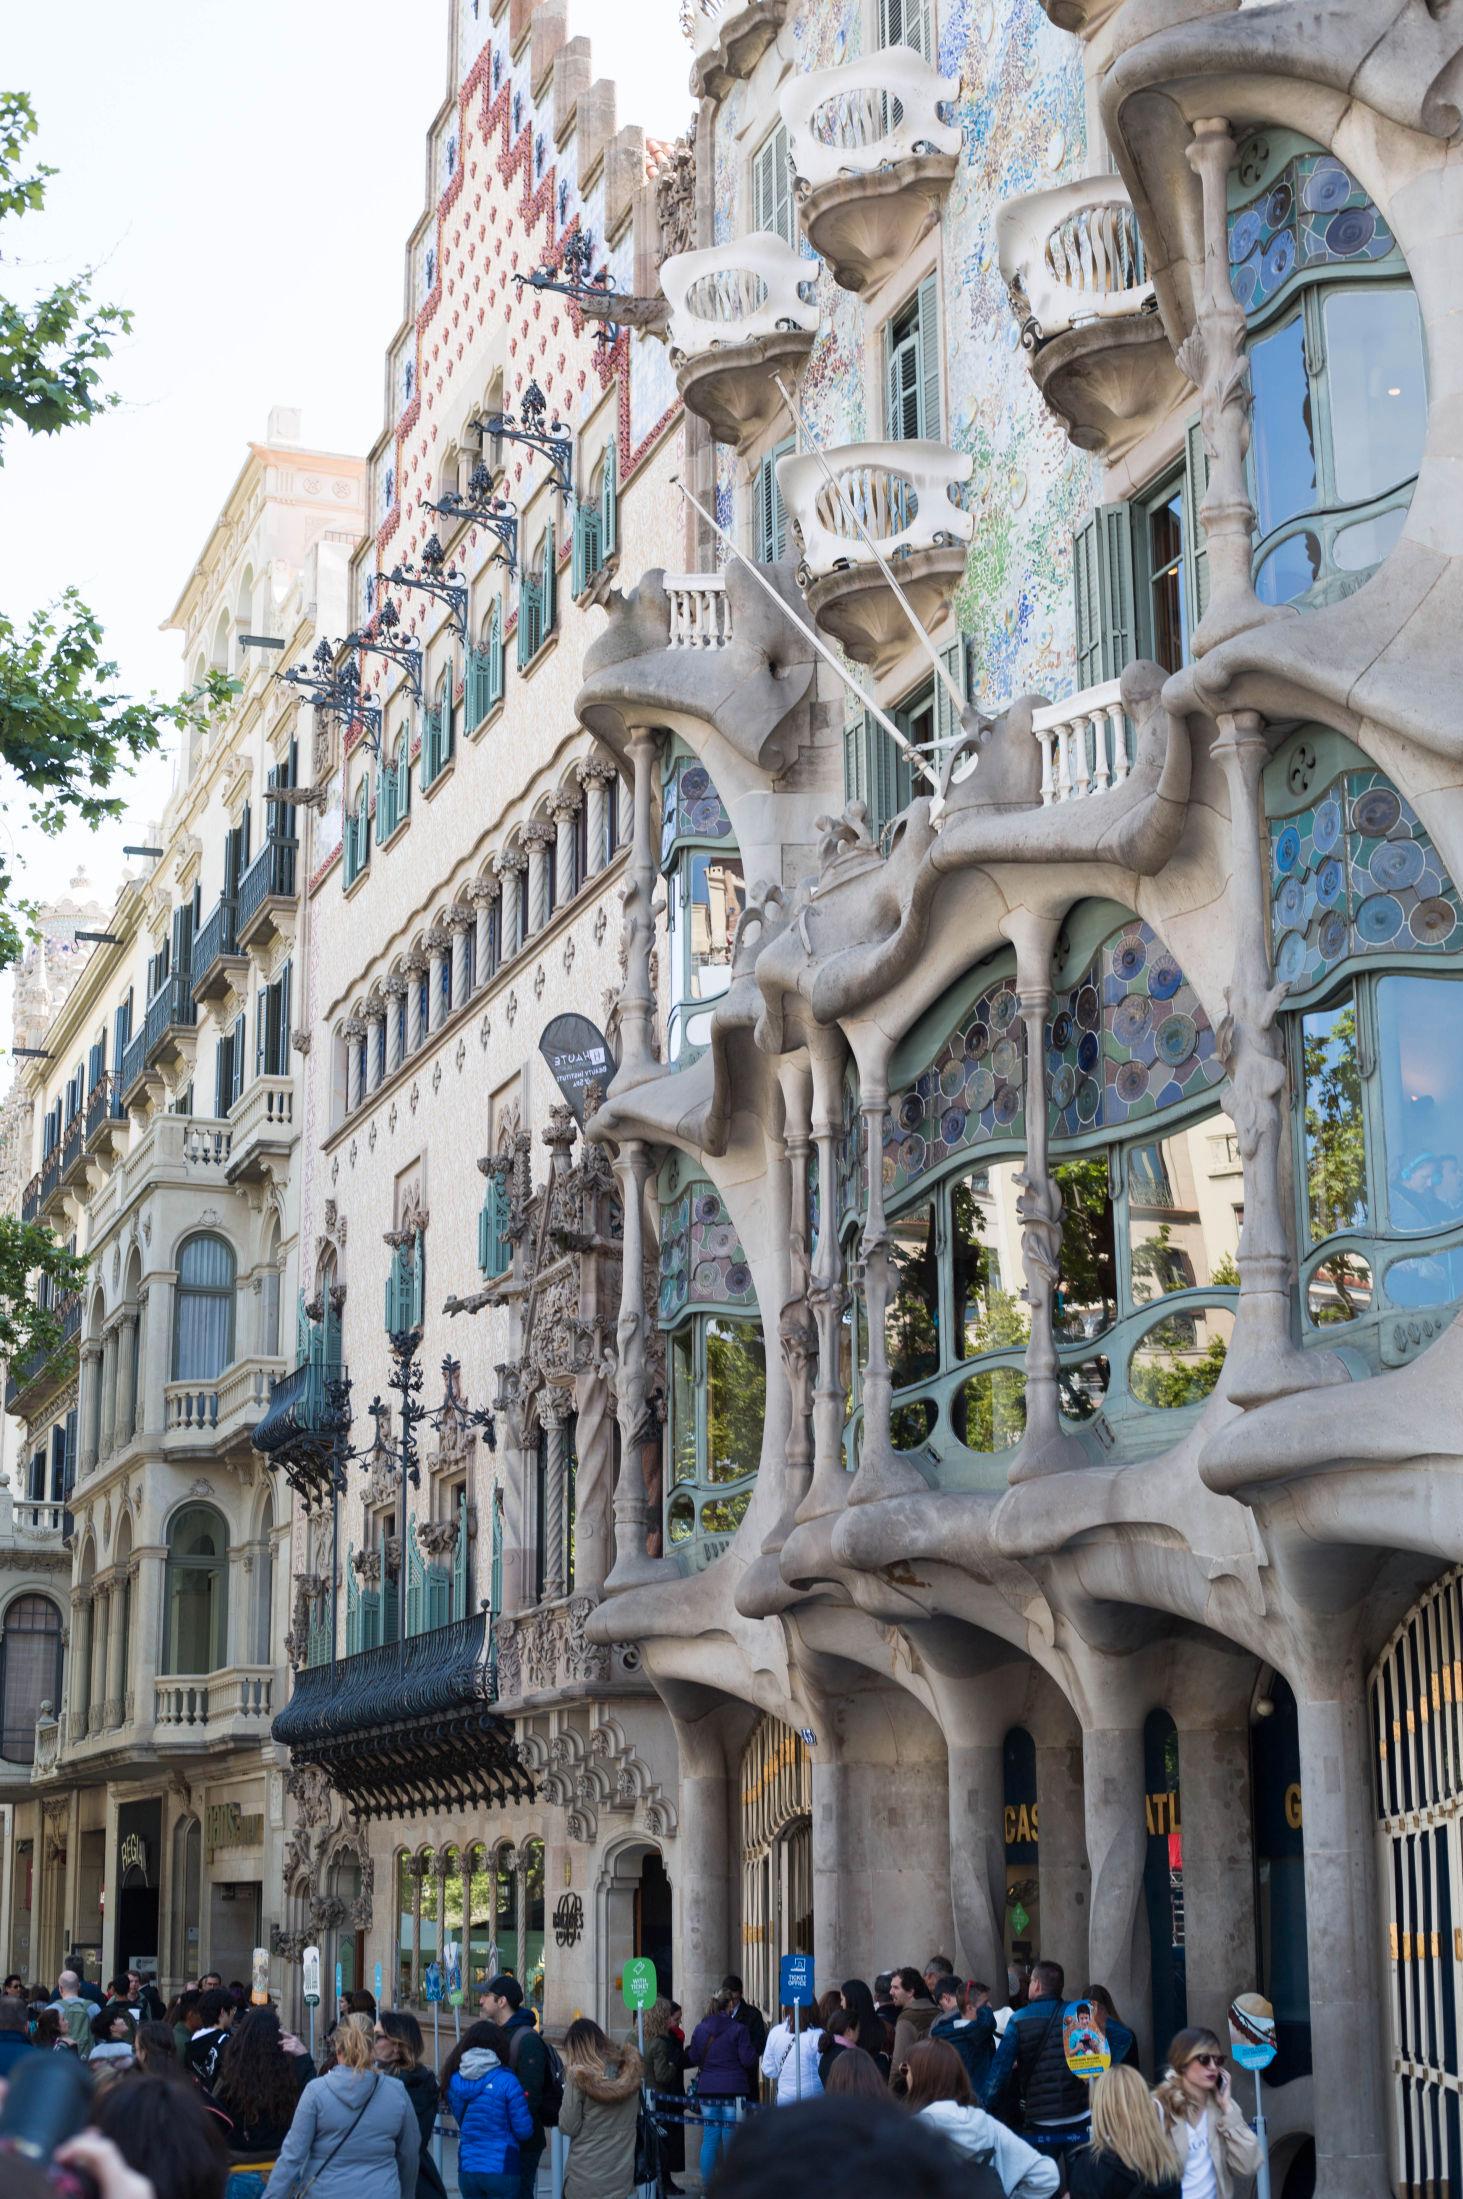 VAKKERT: Pass også på å få med deg den spennende arkitekturen når du er i Barcelona. Foto: Audun Aagre